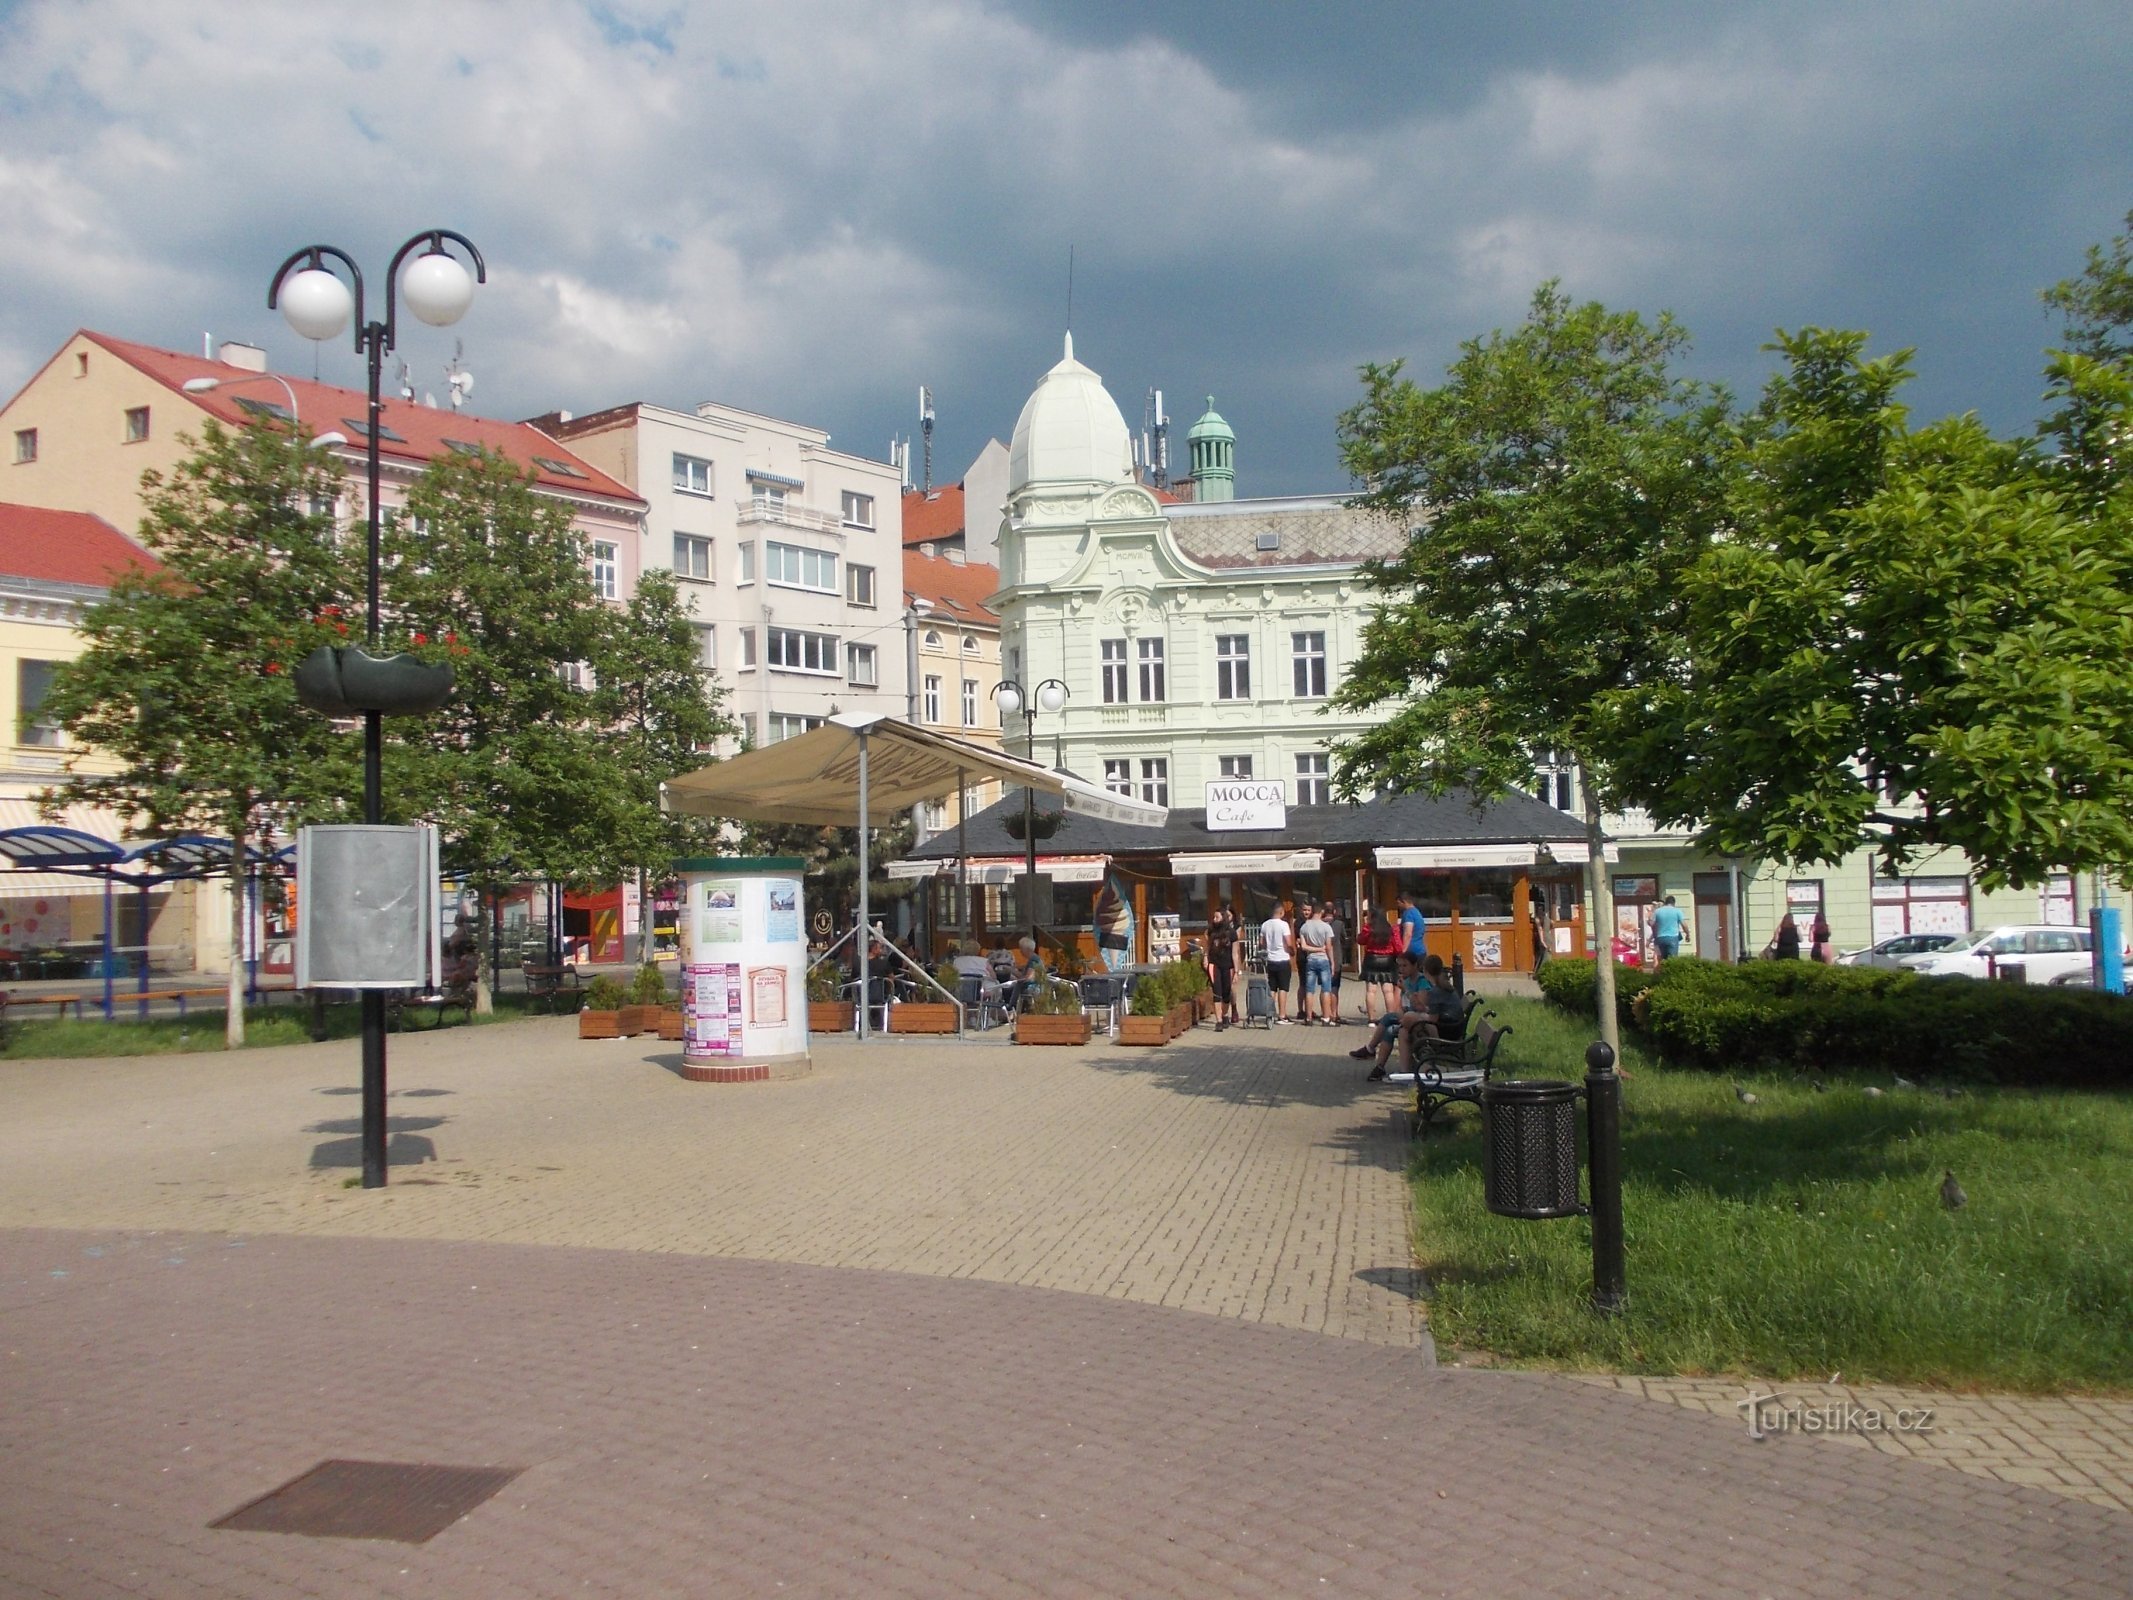 Πλατεία Beneš